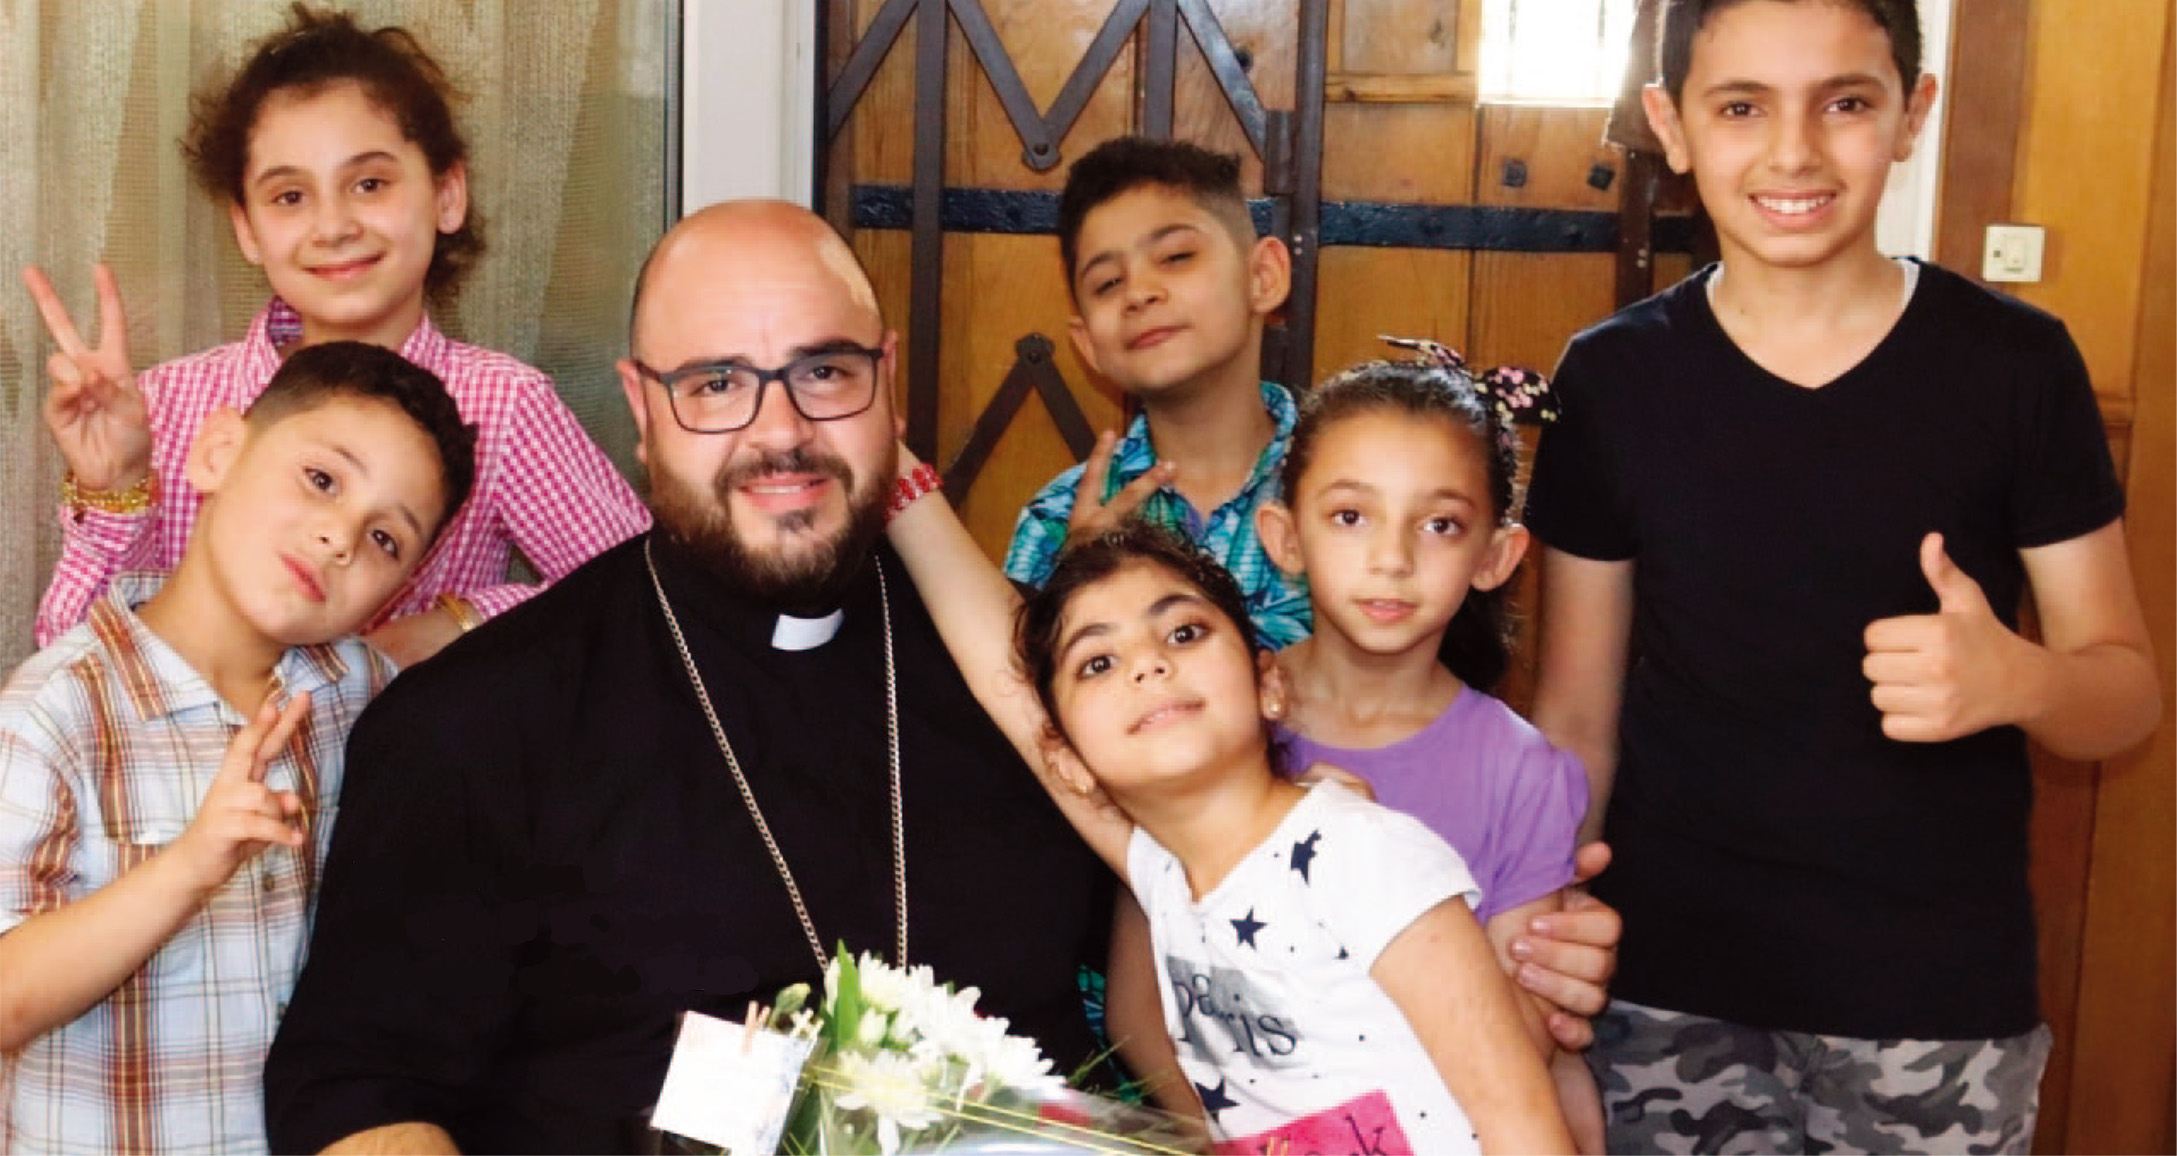 2022年に「聖地ろうあ子どもの里」のNew Directorに就任されたJamil Khadir神父と子どもたちの写真。Jamil神父が6人の子どもたちに囲まれている。みな楽しそう。